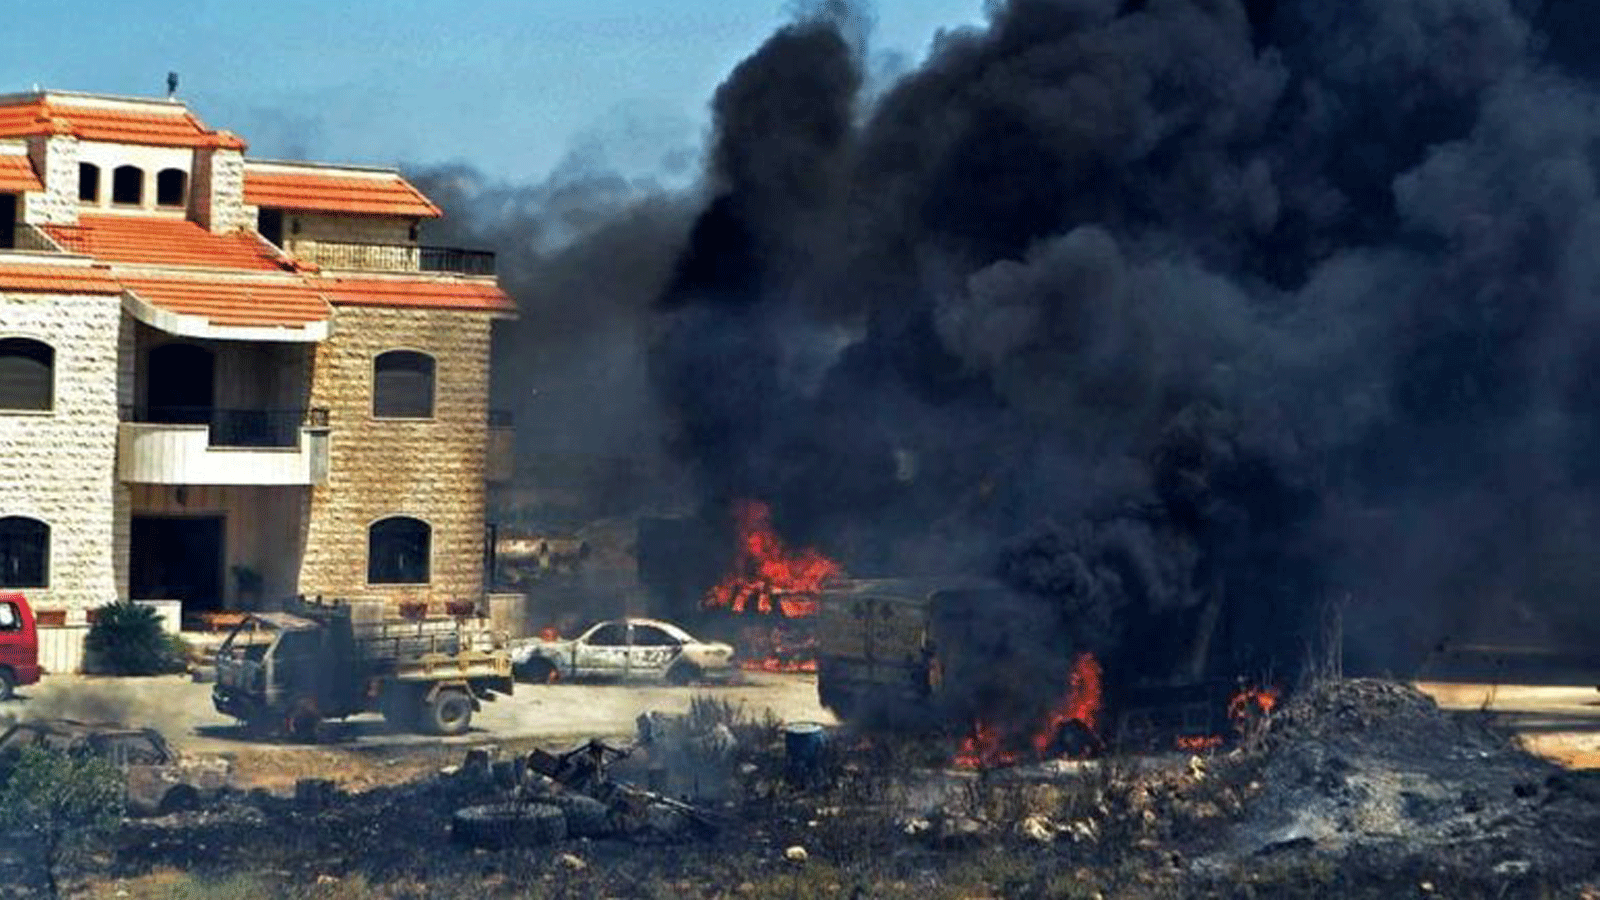 سيارات تحترق بالقرب من خزان الوقود المنفجر في قرية التليل في منطقة عكار شمال لبنان في 15 آب / أغسطس 2021